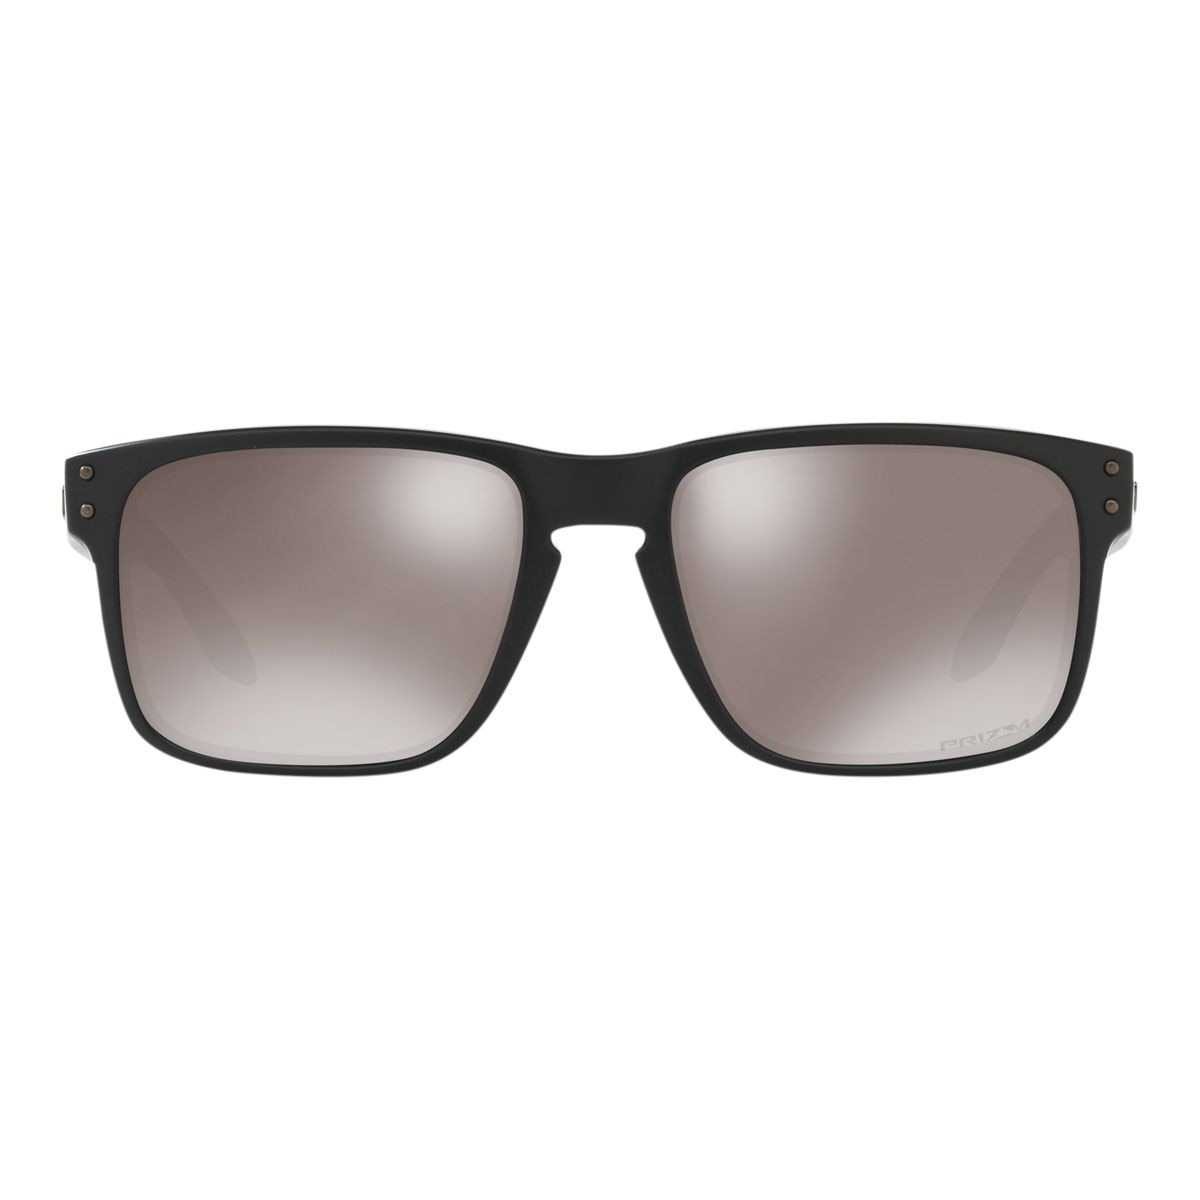 Oakley Men's/Women's Holbrook Wayfarer Sunglasses Polarized